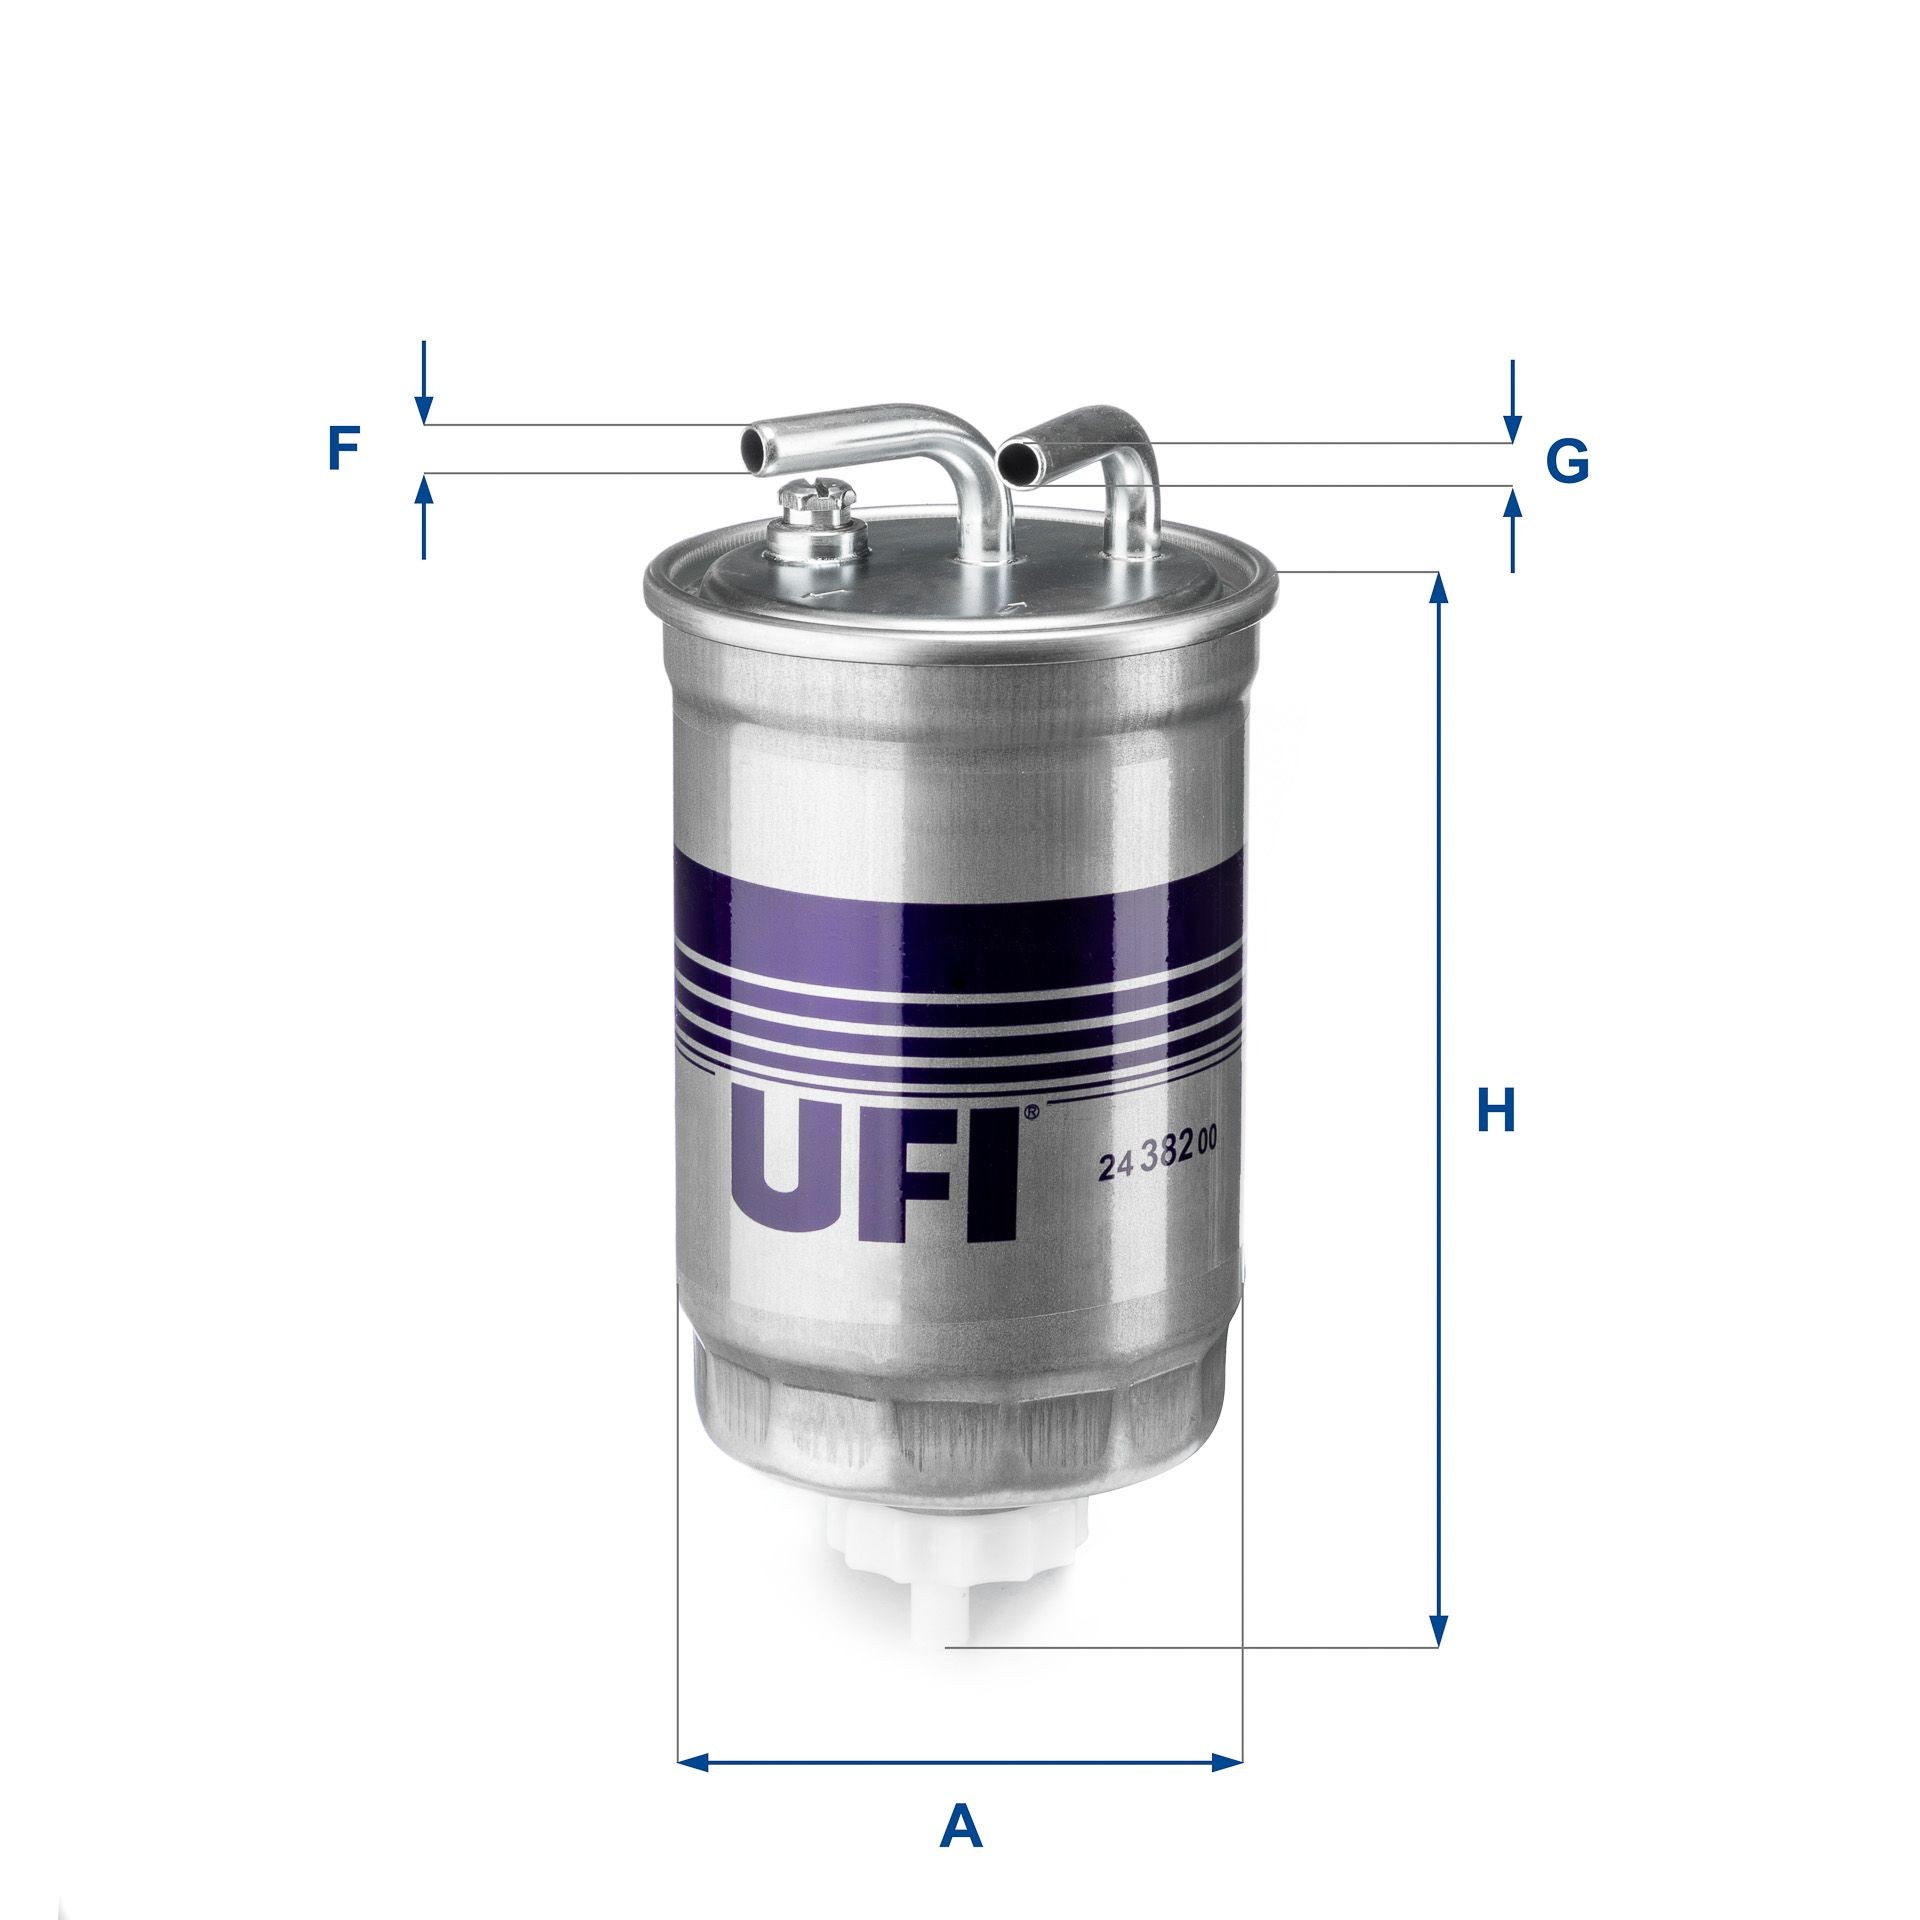 24.382.00 UFI Fuel filters MAZDA Filter Insert, 8mm, 8mm